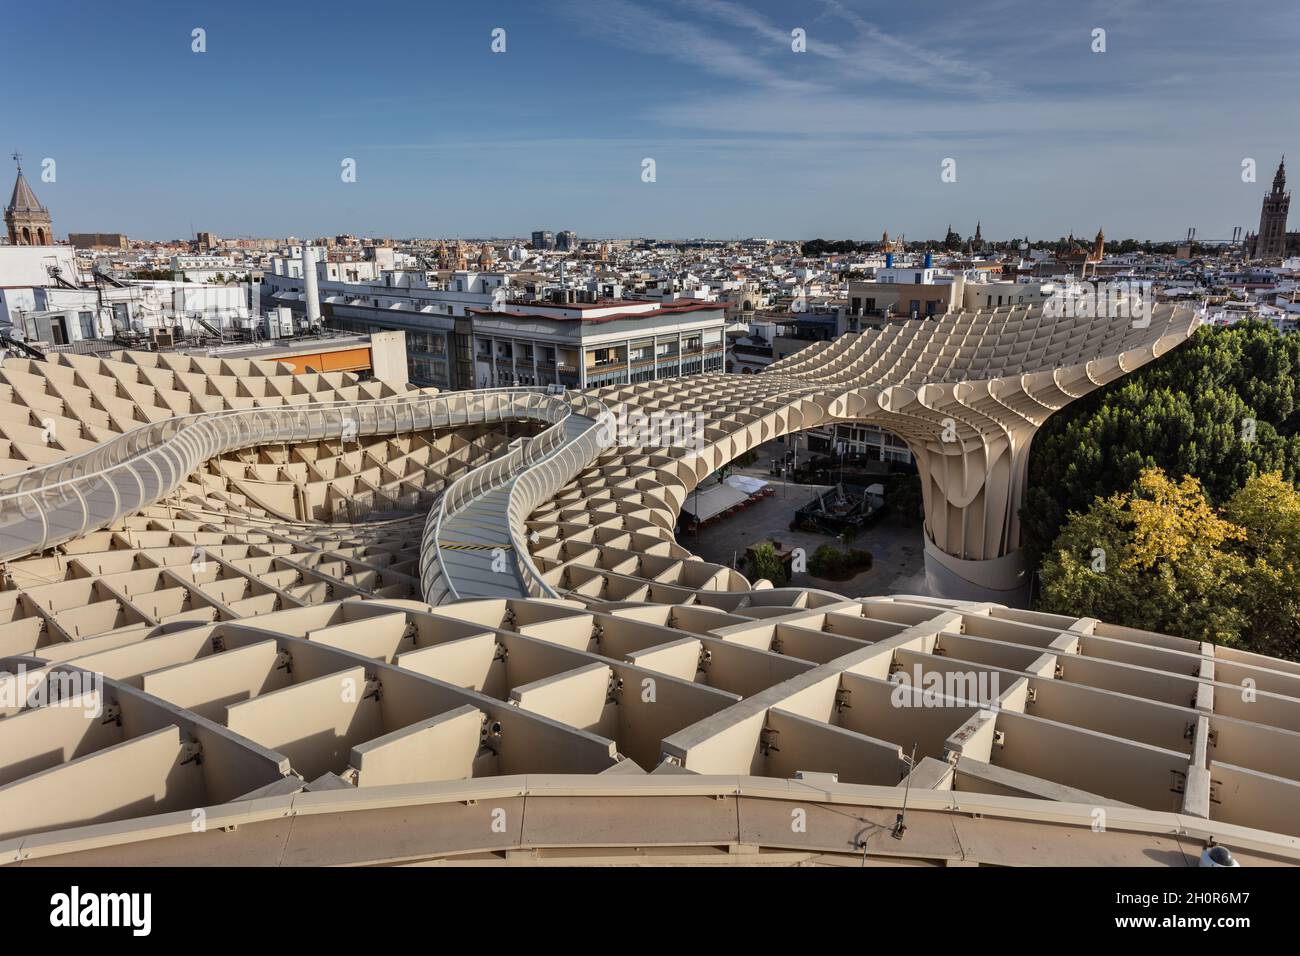 Metropol Sonnenschirm in Sevilla, Spanien. Auch bekannt als der Pilz. Stockfoto